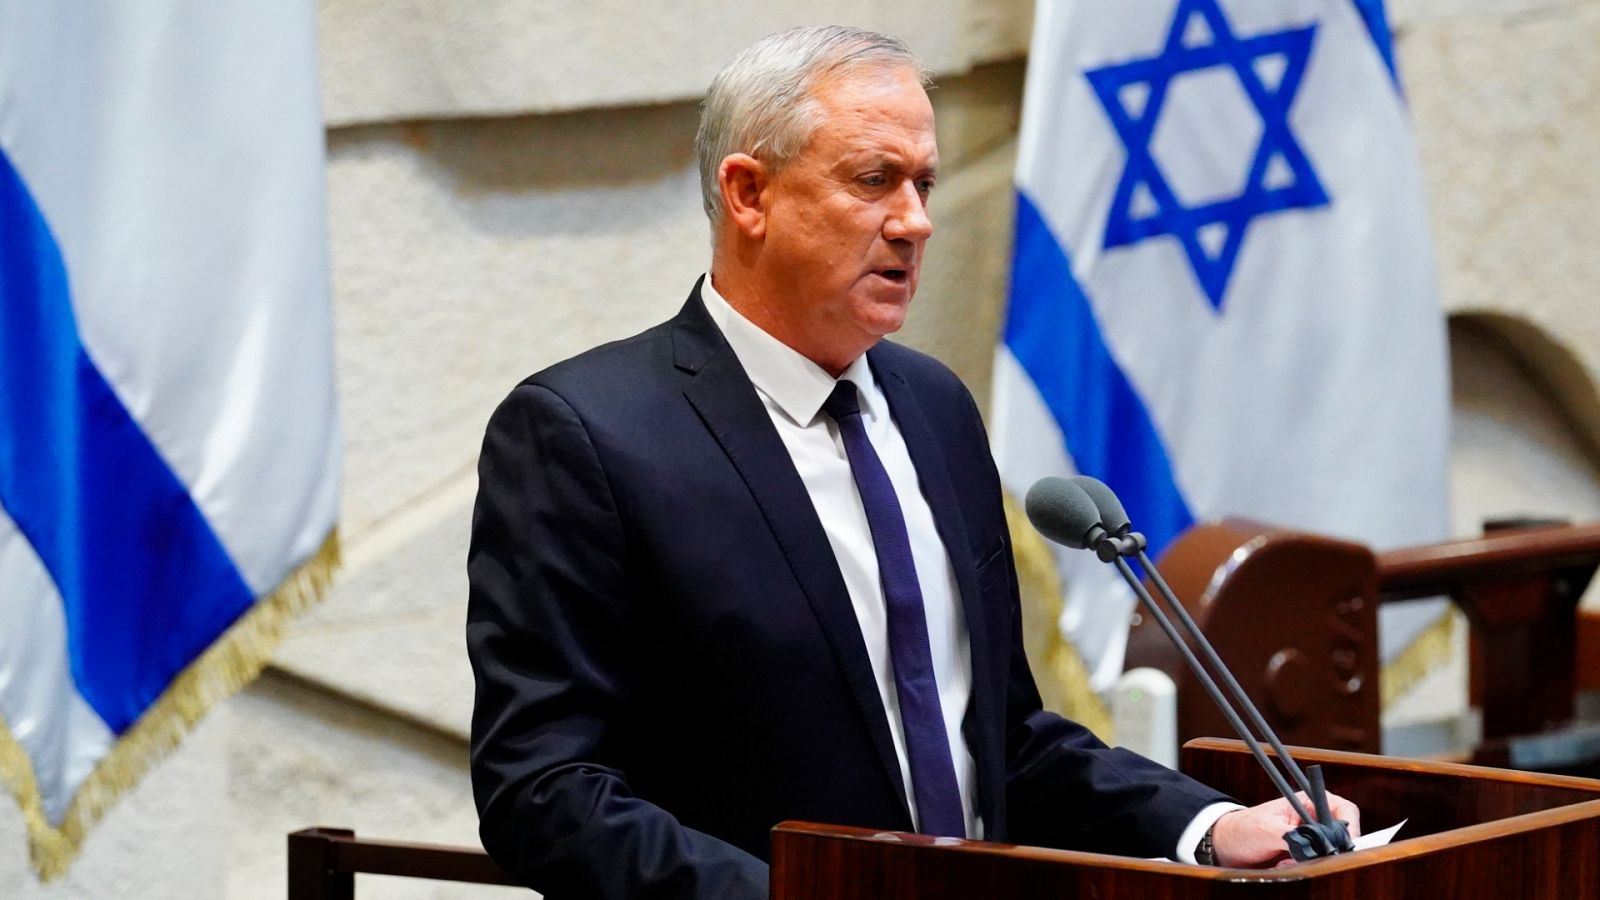 El parlamento israelí aprueba el nuevo Gobierno de coalición de Netanyahu y Gantz